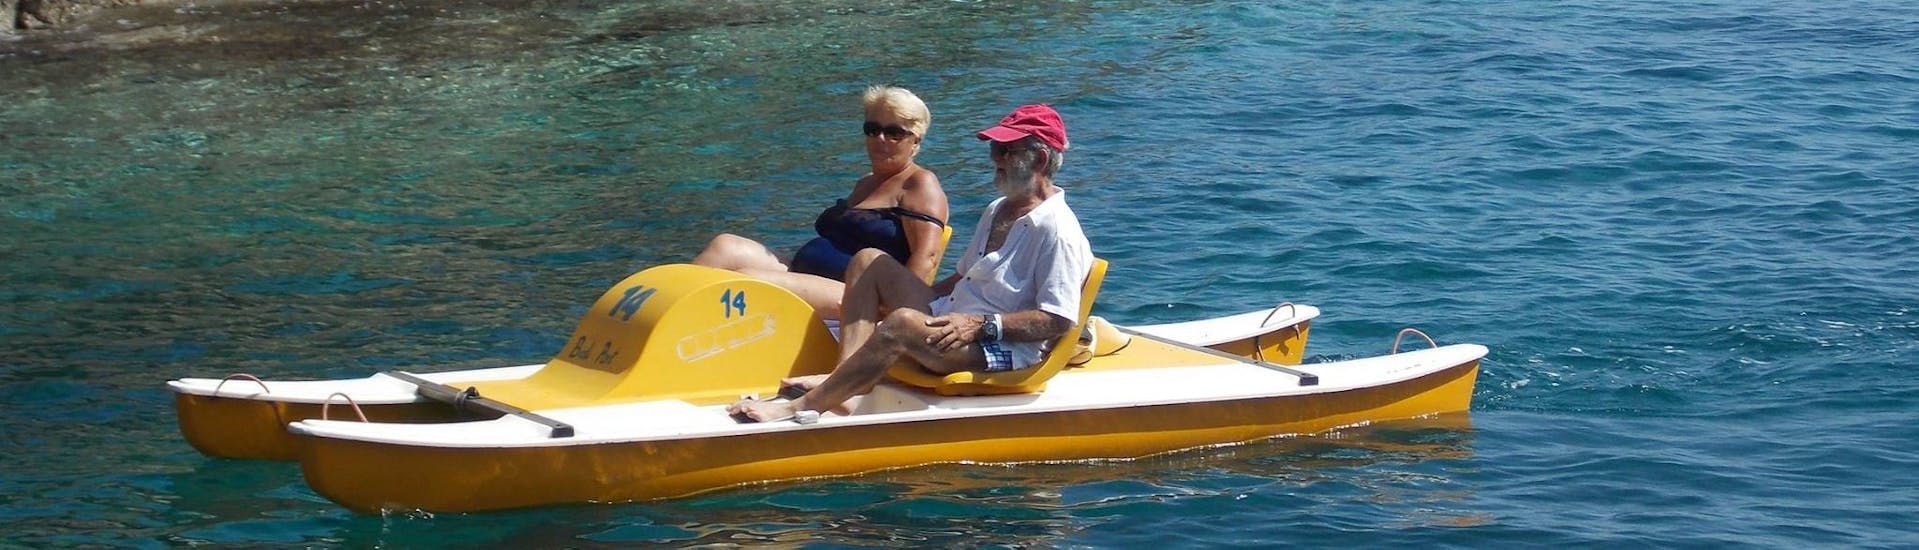 Due anziani passano un piacevole momento insieme durante il Noleggio pedalò a Bali a Creta con The Skippers - Boats & Water Sports Bali.